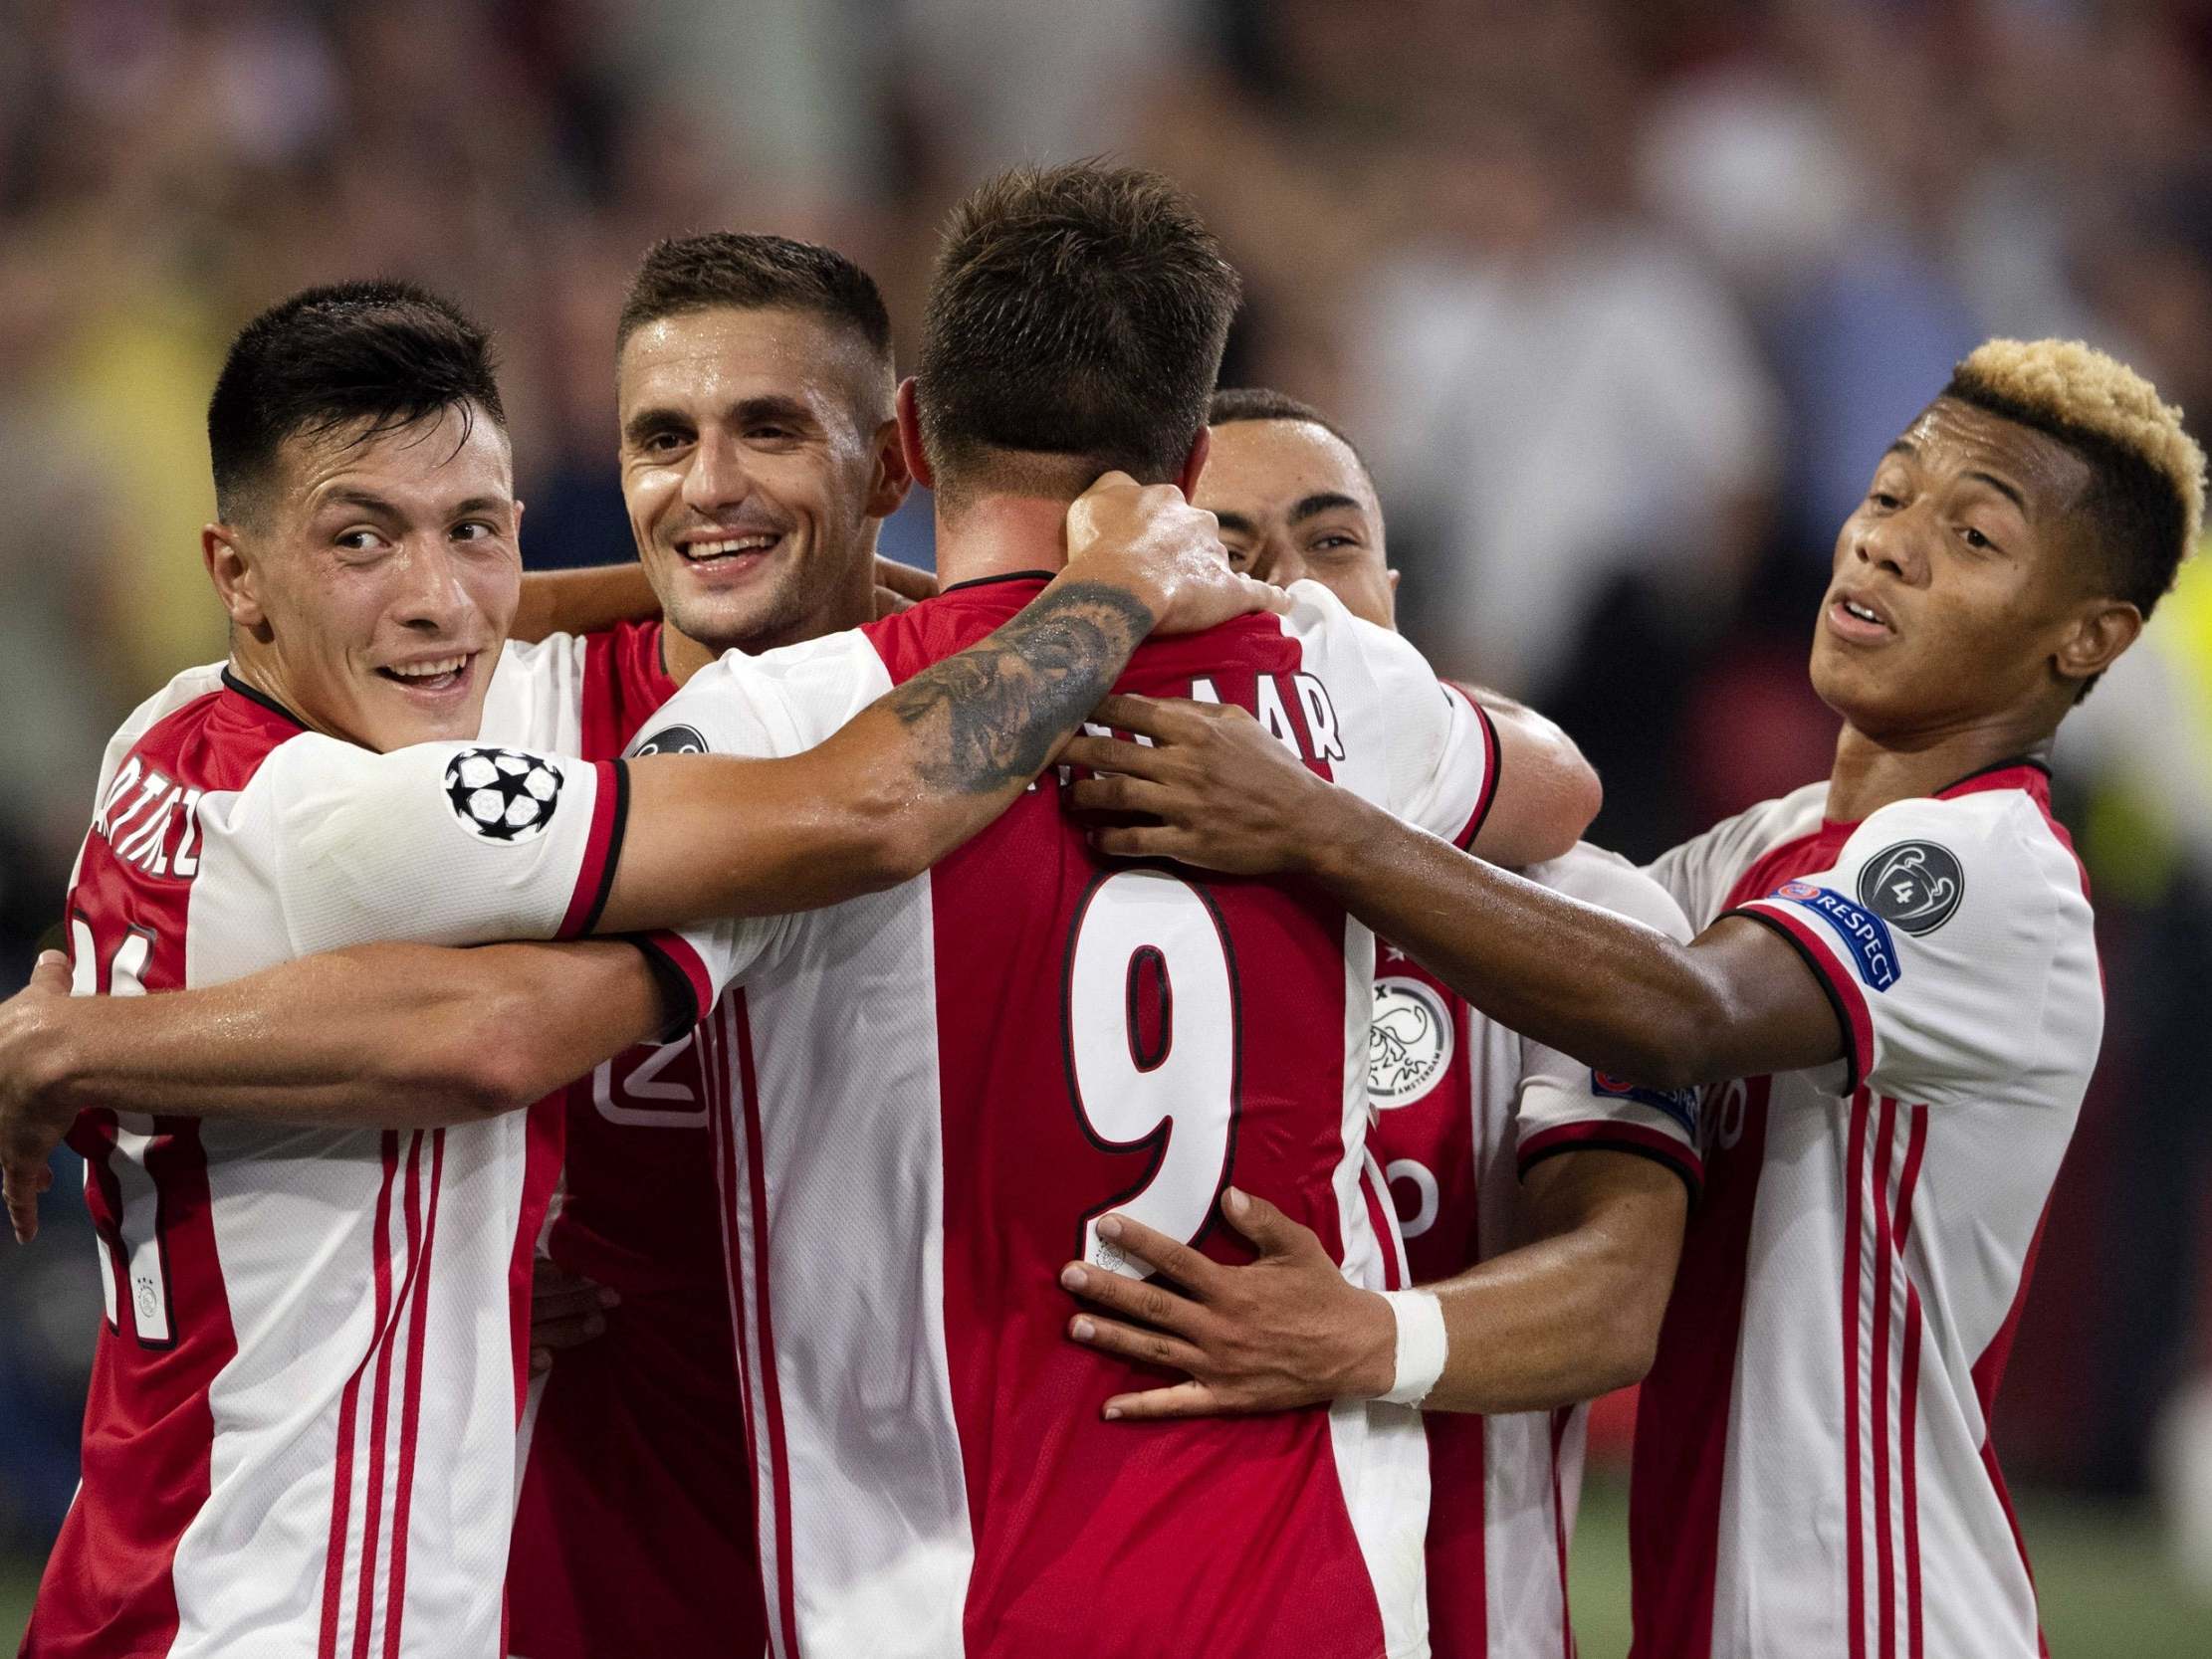 Nhận định kèo bóng đá: Ajax vs Lille OSC – 00h55 26/02/2021